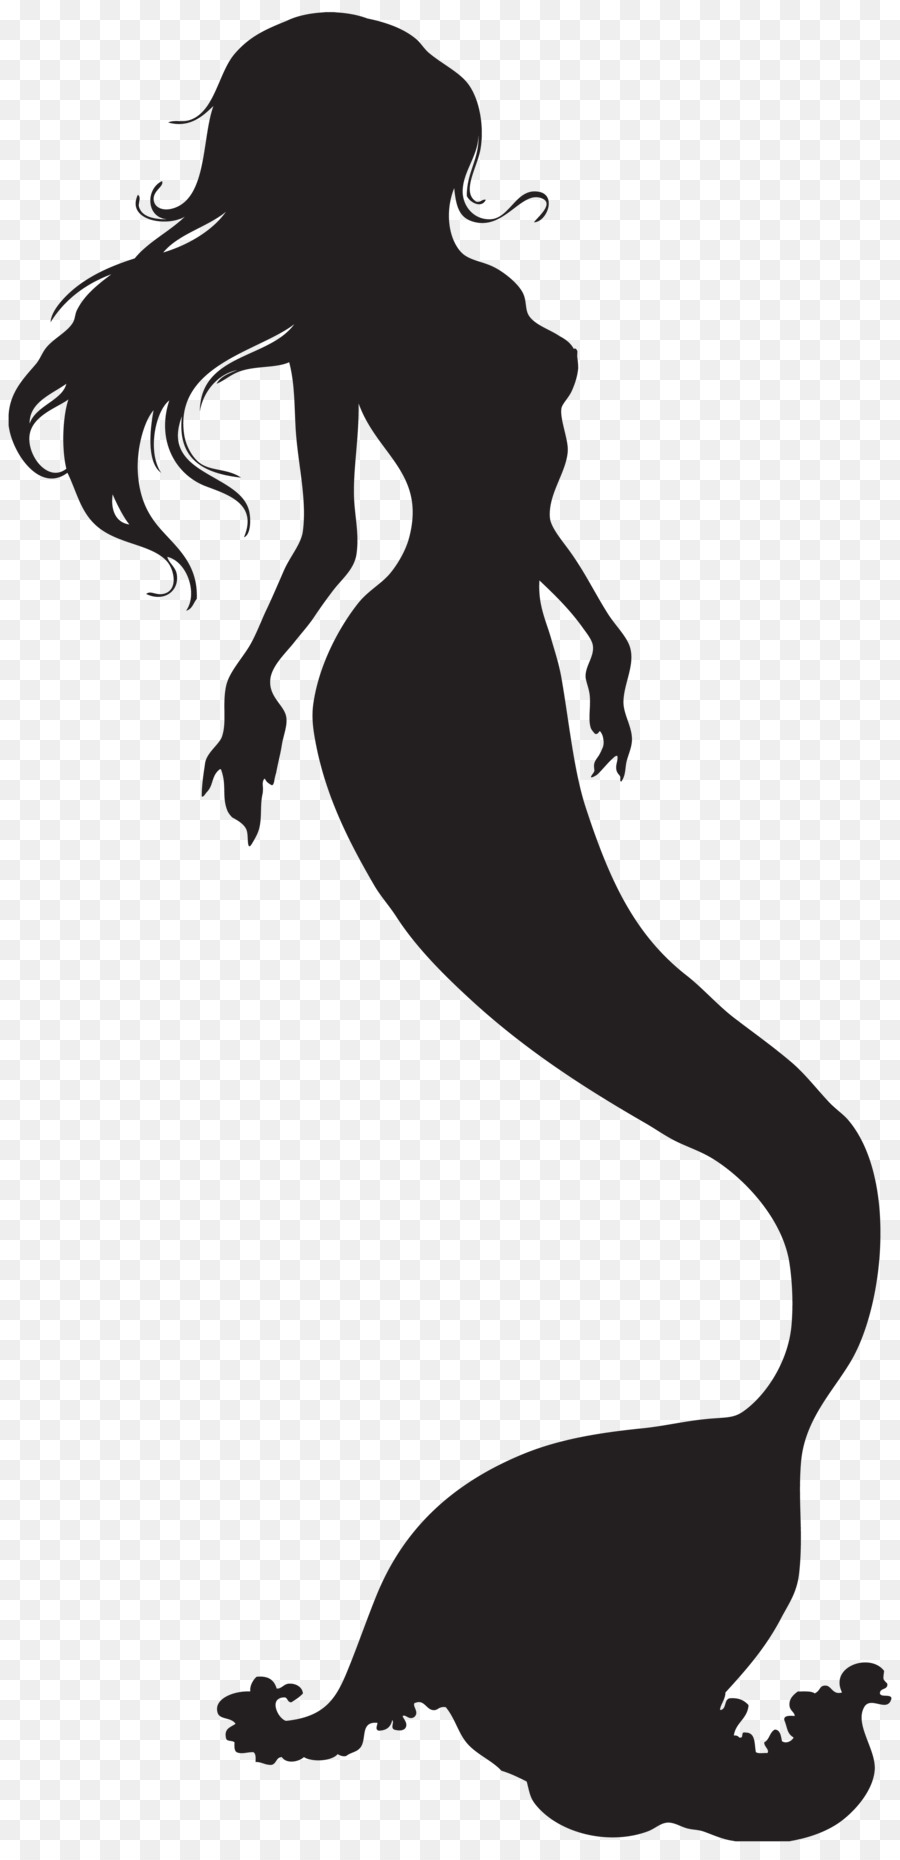 Mermaid Silhouette Clip art - Mermaid png download - 3874*8000 - Free Transparent Mermaid png Download.